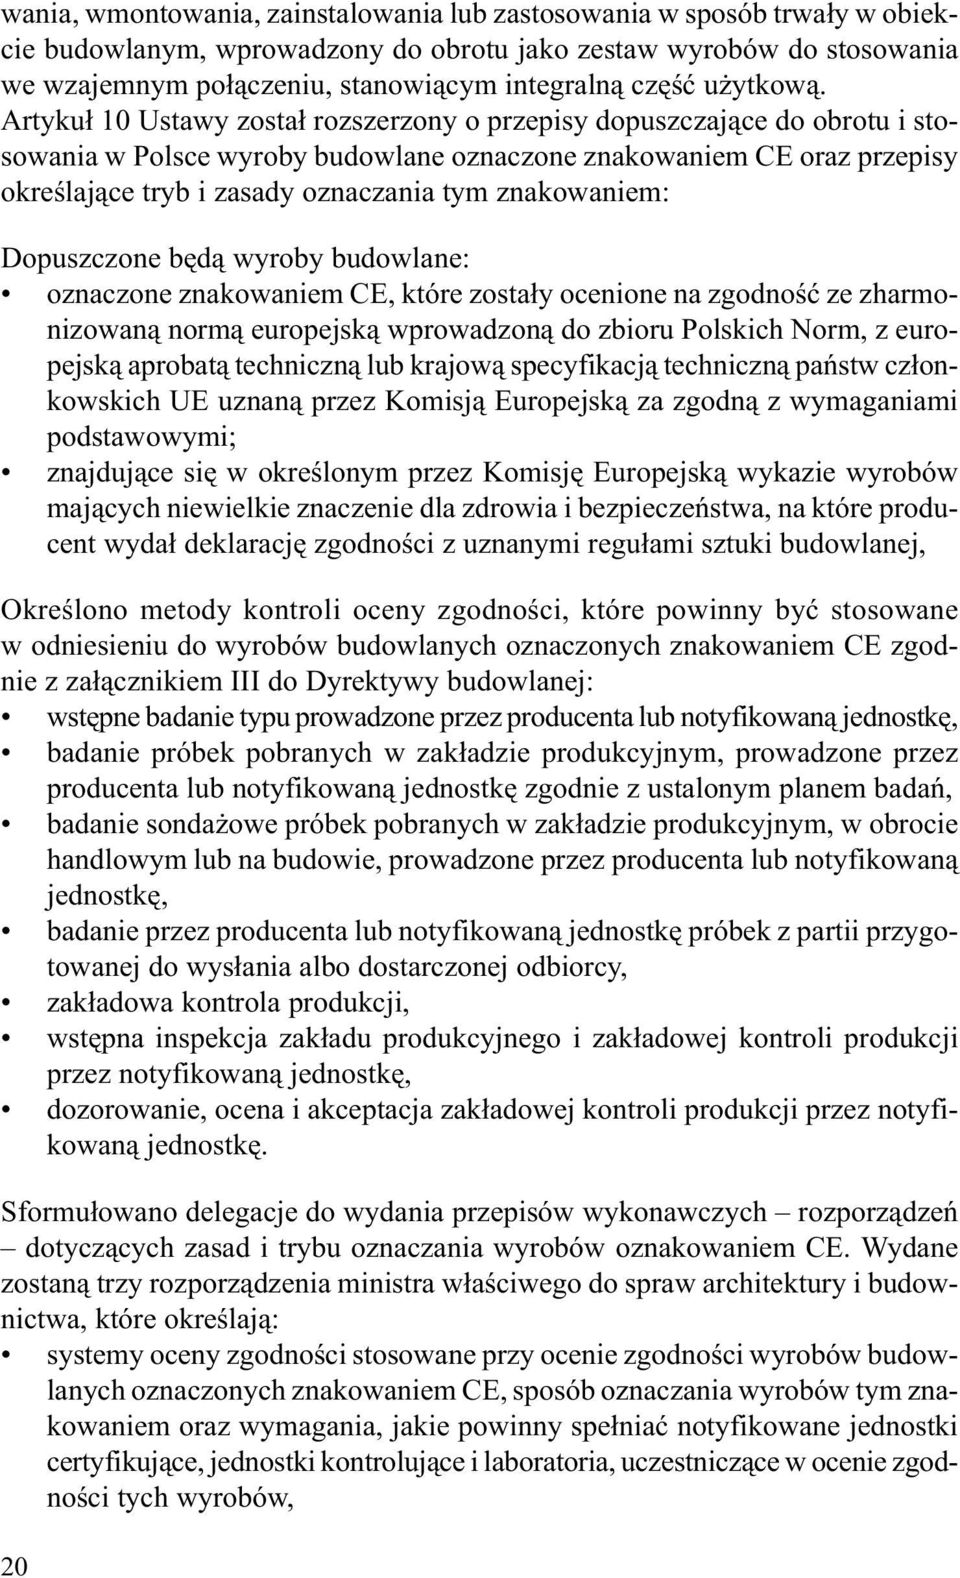 Artyku³ 10 Ustawy zosta³ rozszerzony o przepisy dopuszczaj¹ce do obrotu i stosowania w Polsce wyroby budowlane oznaczone znakowaniem CE oraz przepisy okreœlaj¹ce tryb i zasady oznaczania tym